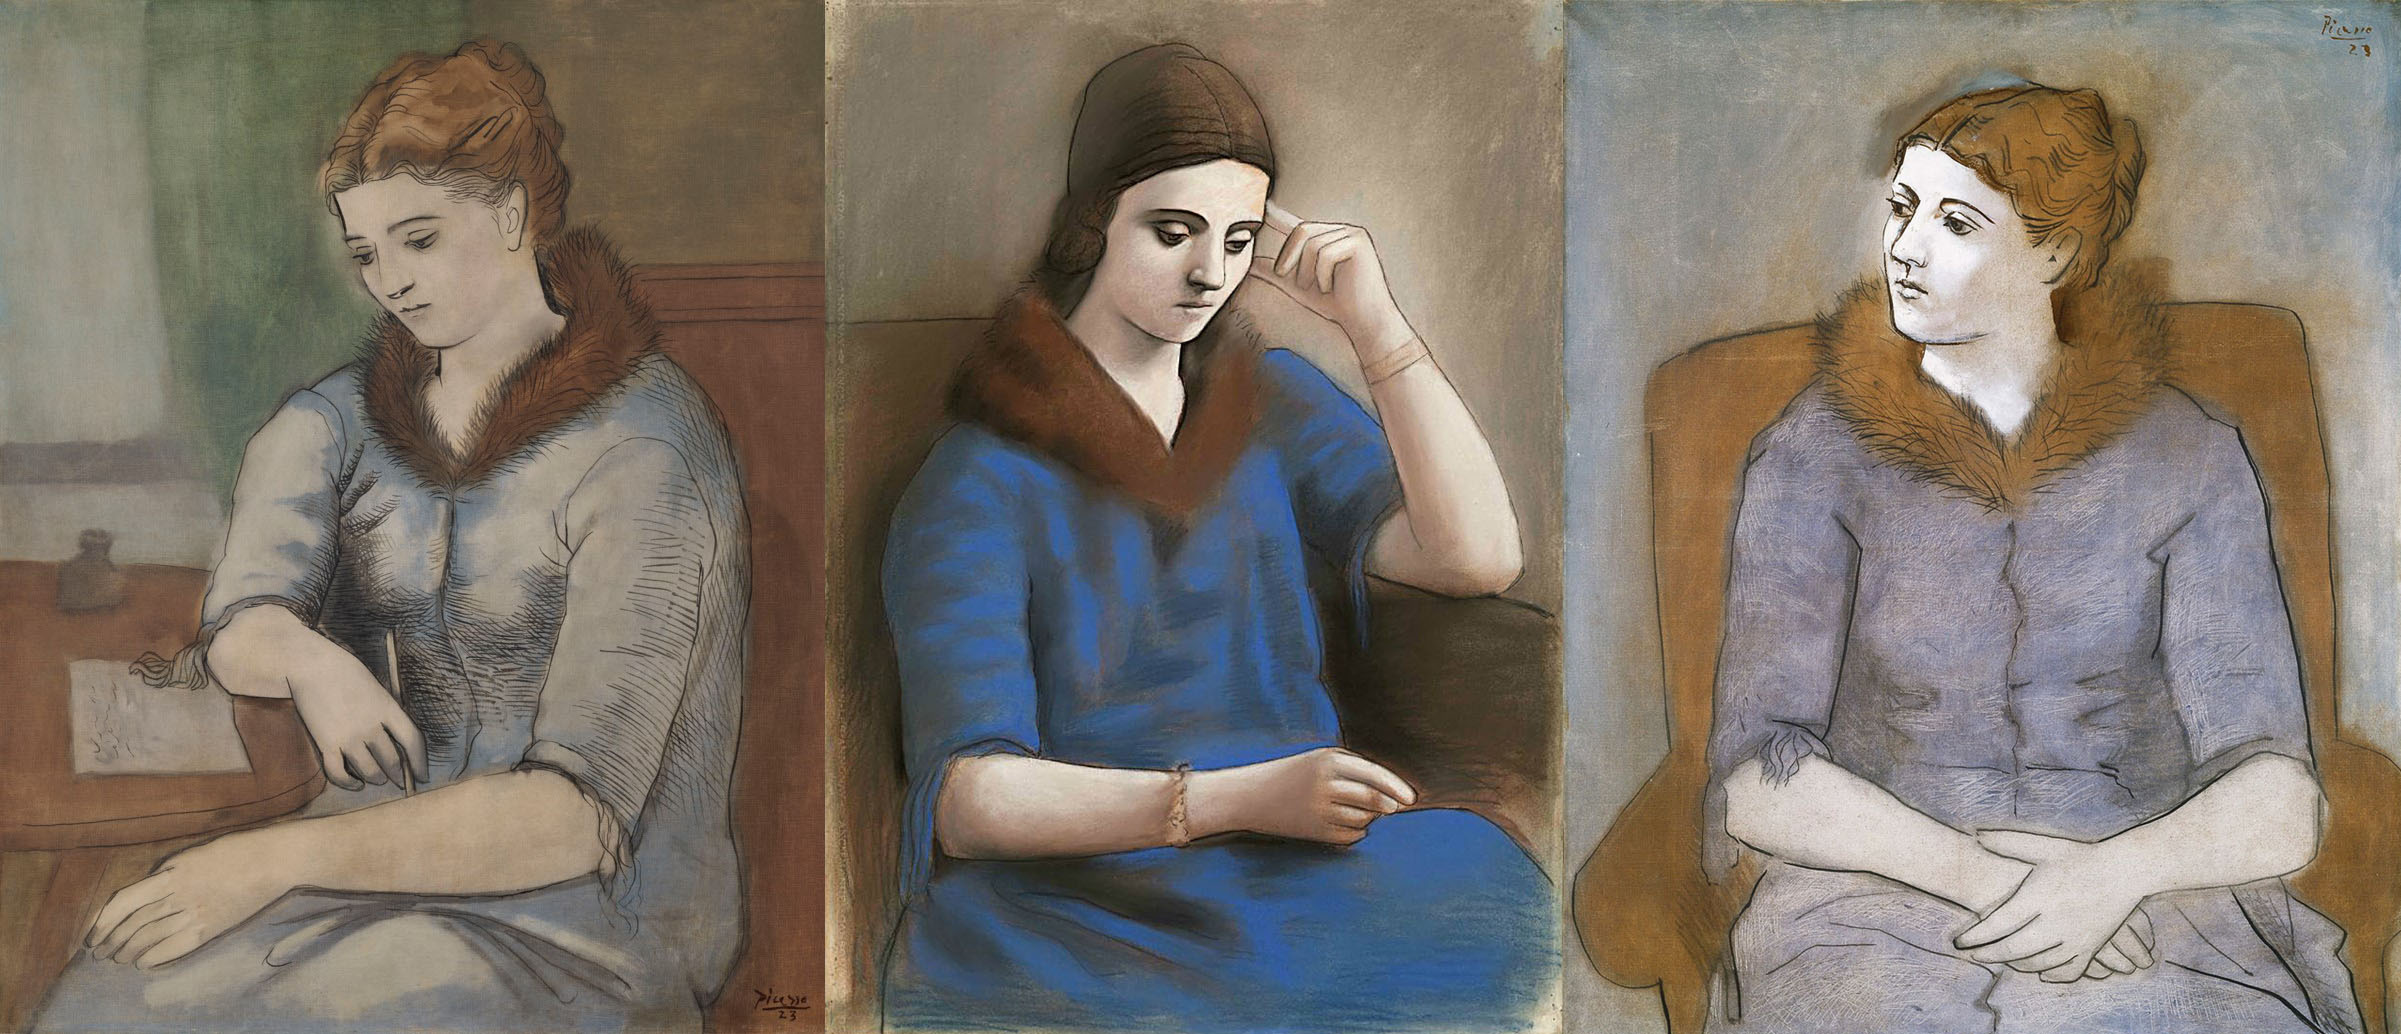 Пабло Пикассо. Письмо, 1923. Ольга в задумчивости, 1923. Ольга, 1923.